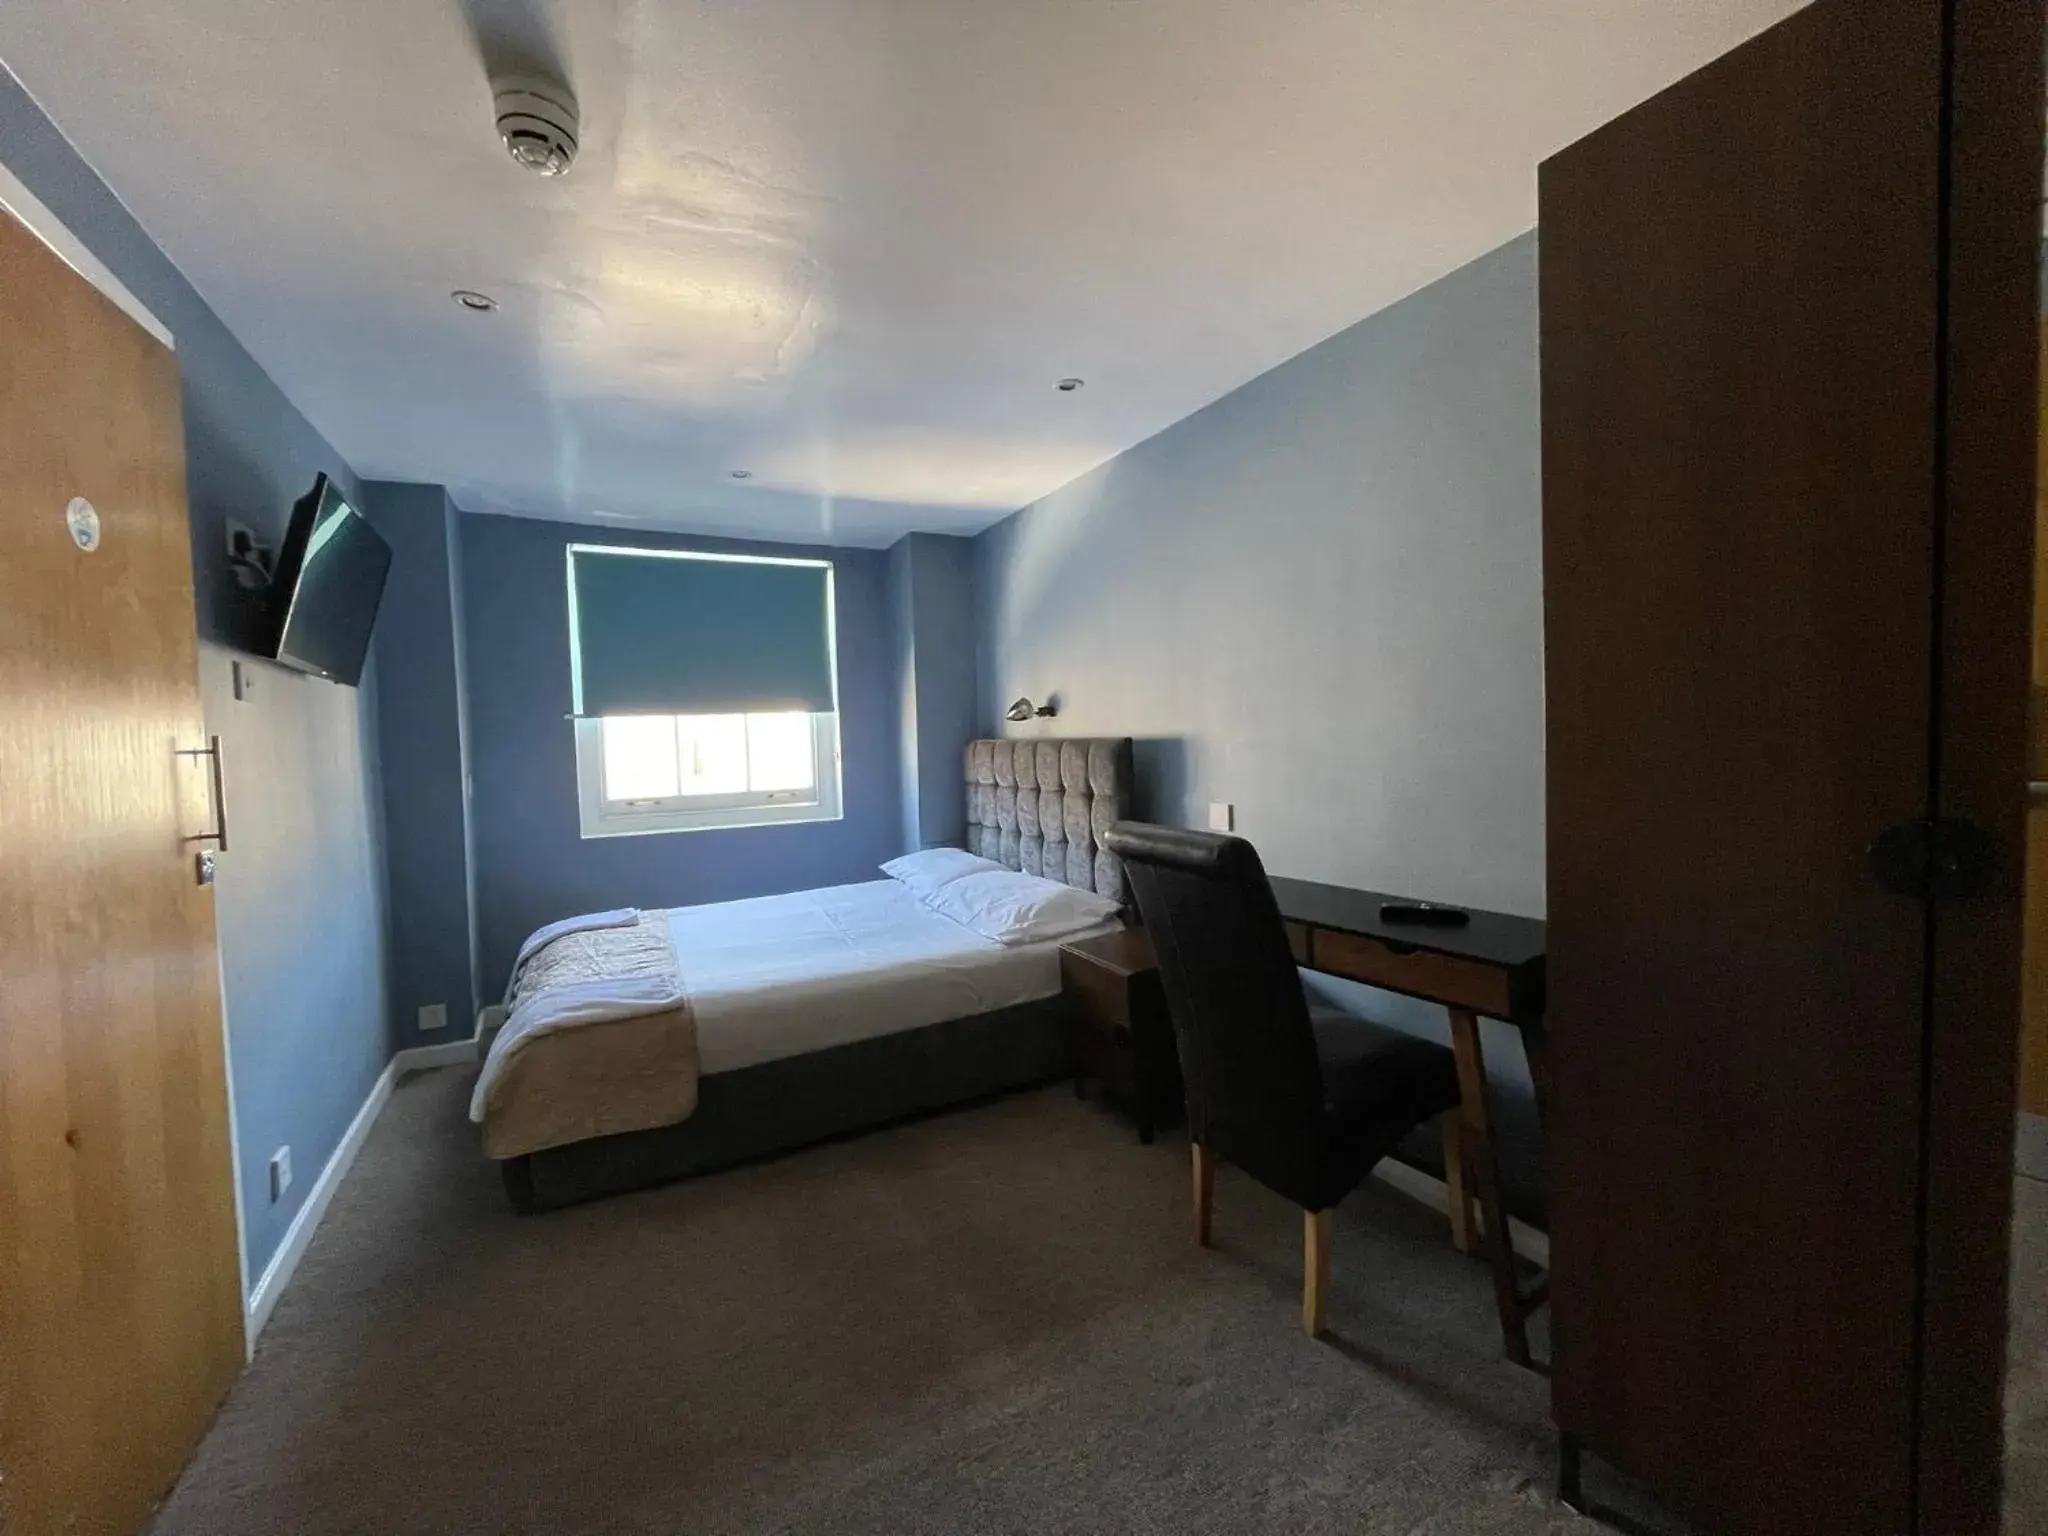 Bedroom in The Somerset Hotel